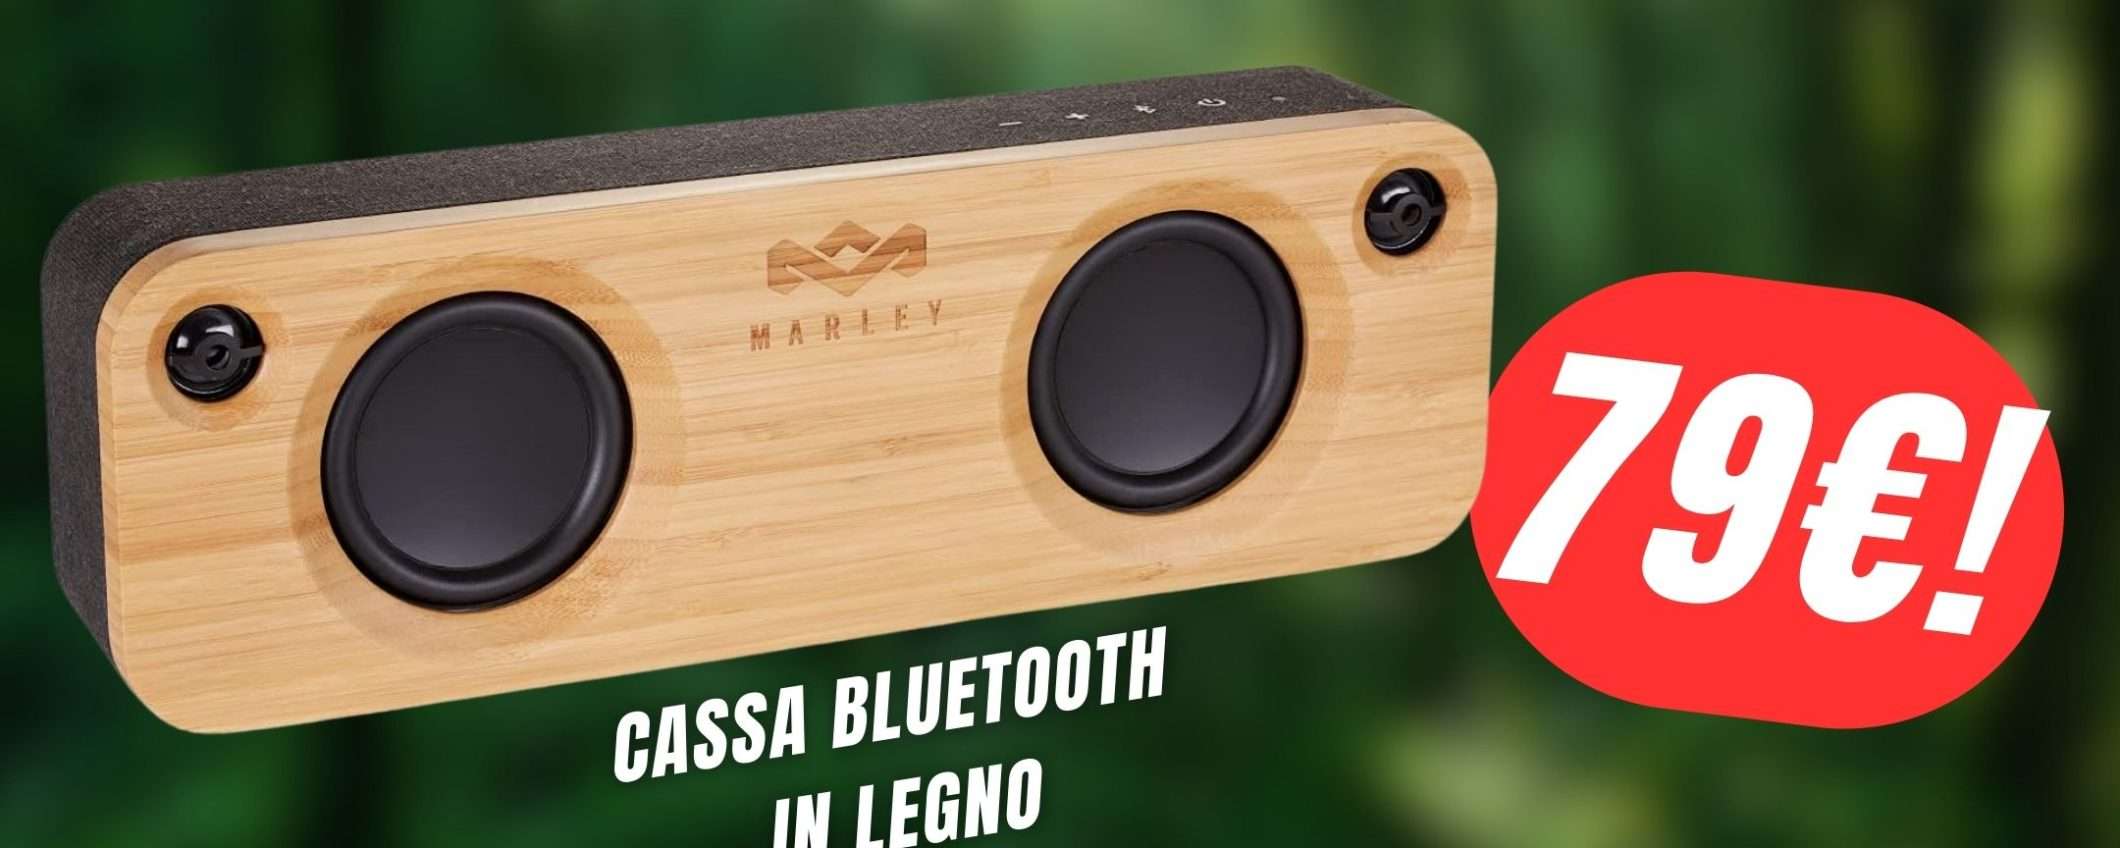 FOLLE SCONTO di 120€ per questa Cassa Bluetooth in Legno!